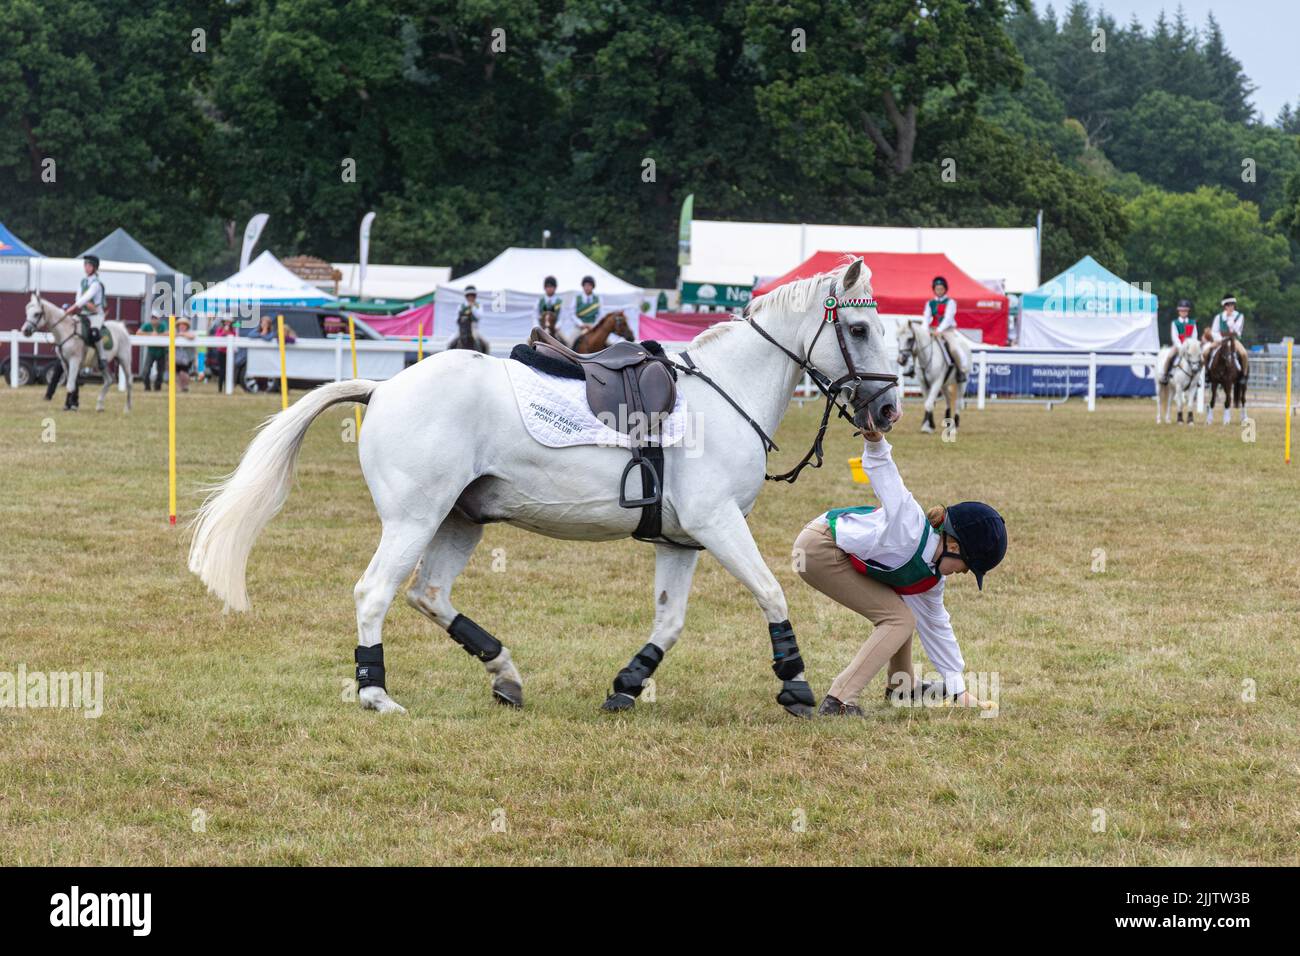 New Forest and Hampshire County Show en juillet 2022, Angleterre, Royaume-Uni. Jeux montés au Pony Club dans l'arène. Banque D'Images